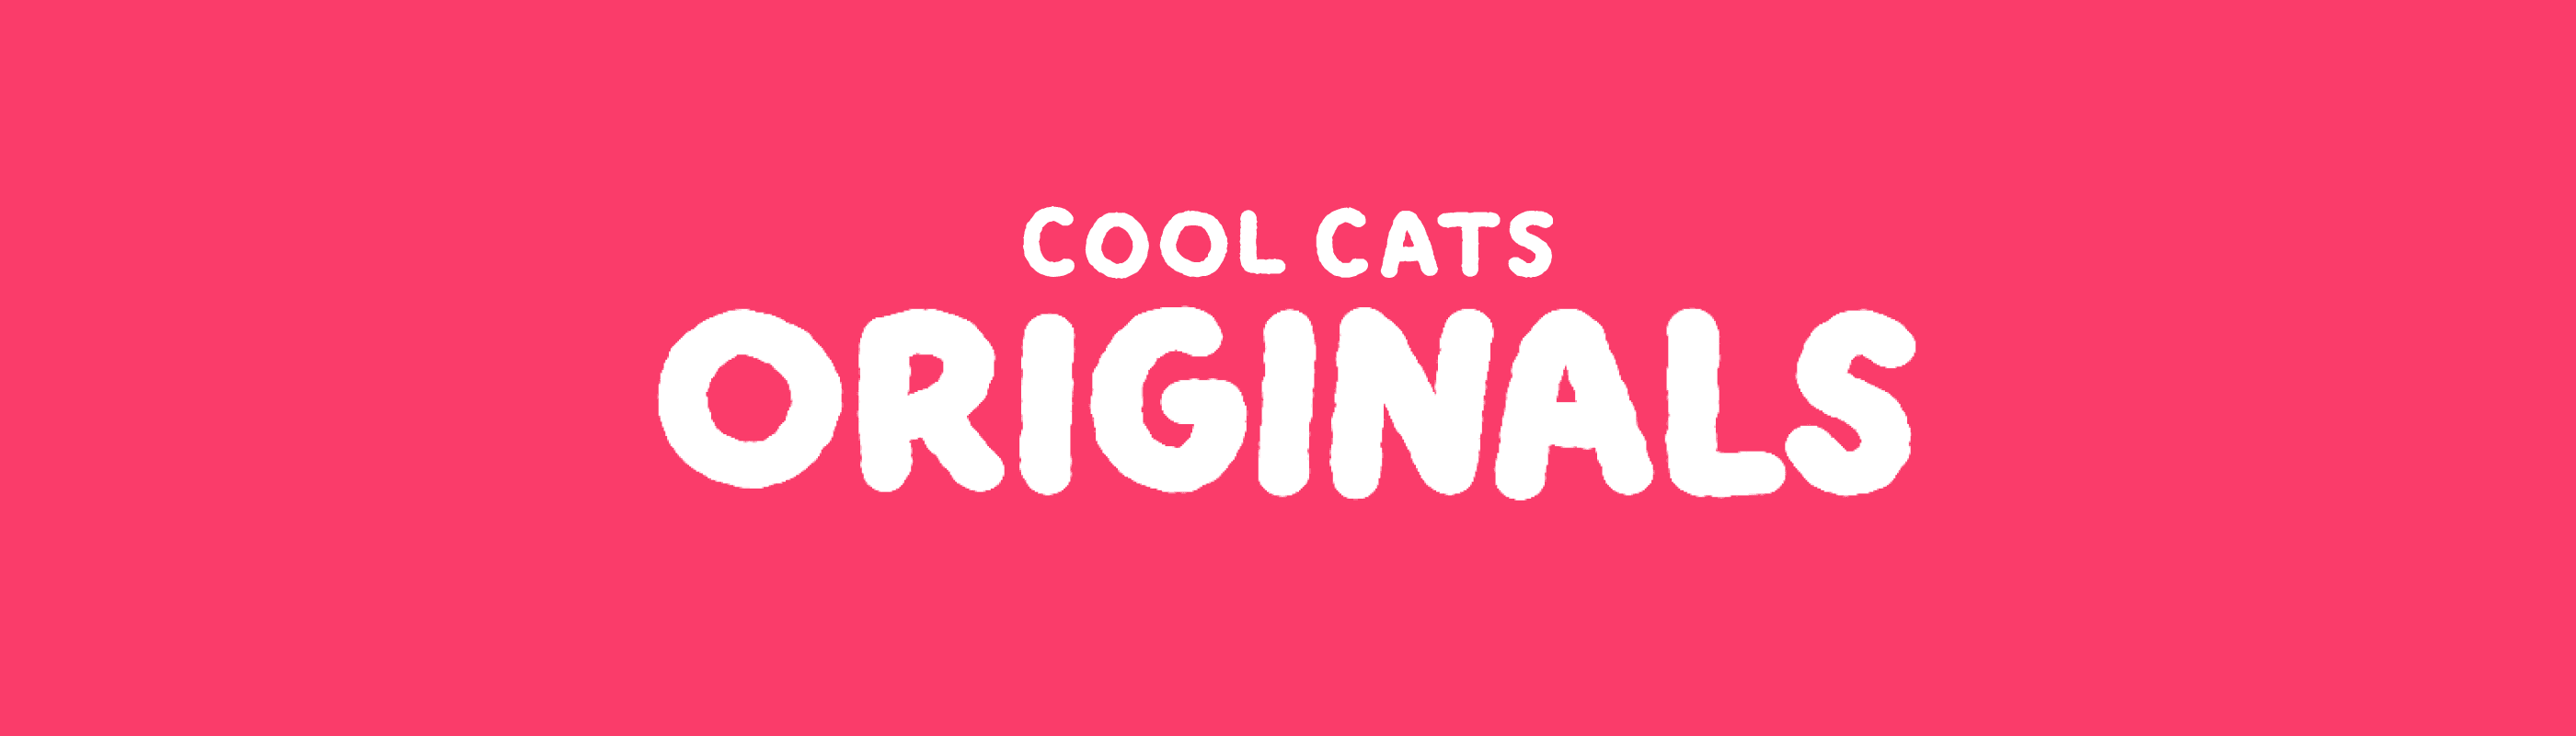 Cool Cats Originals